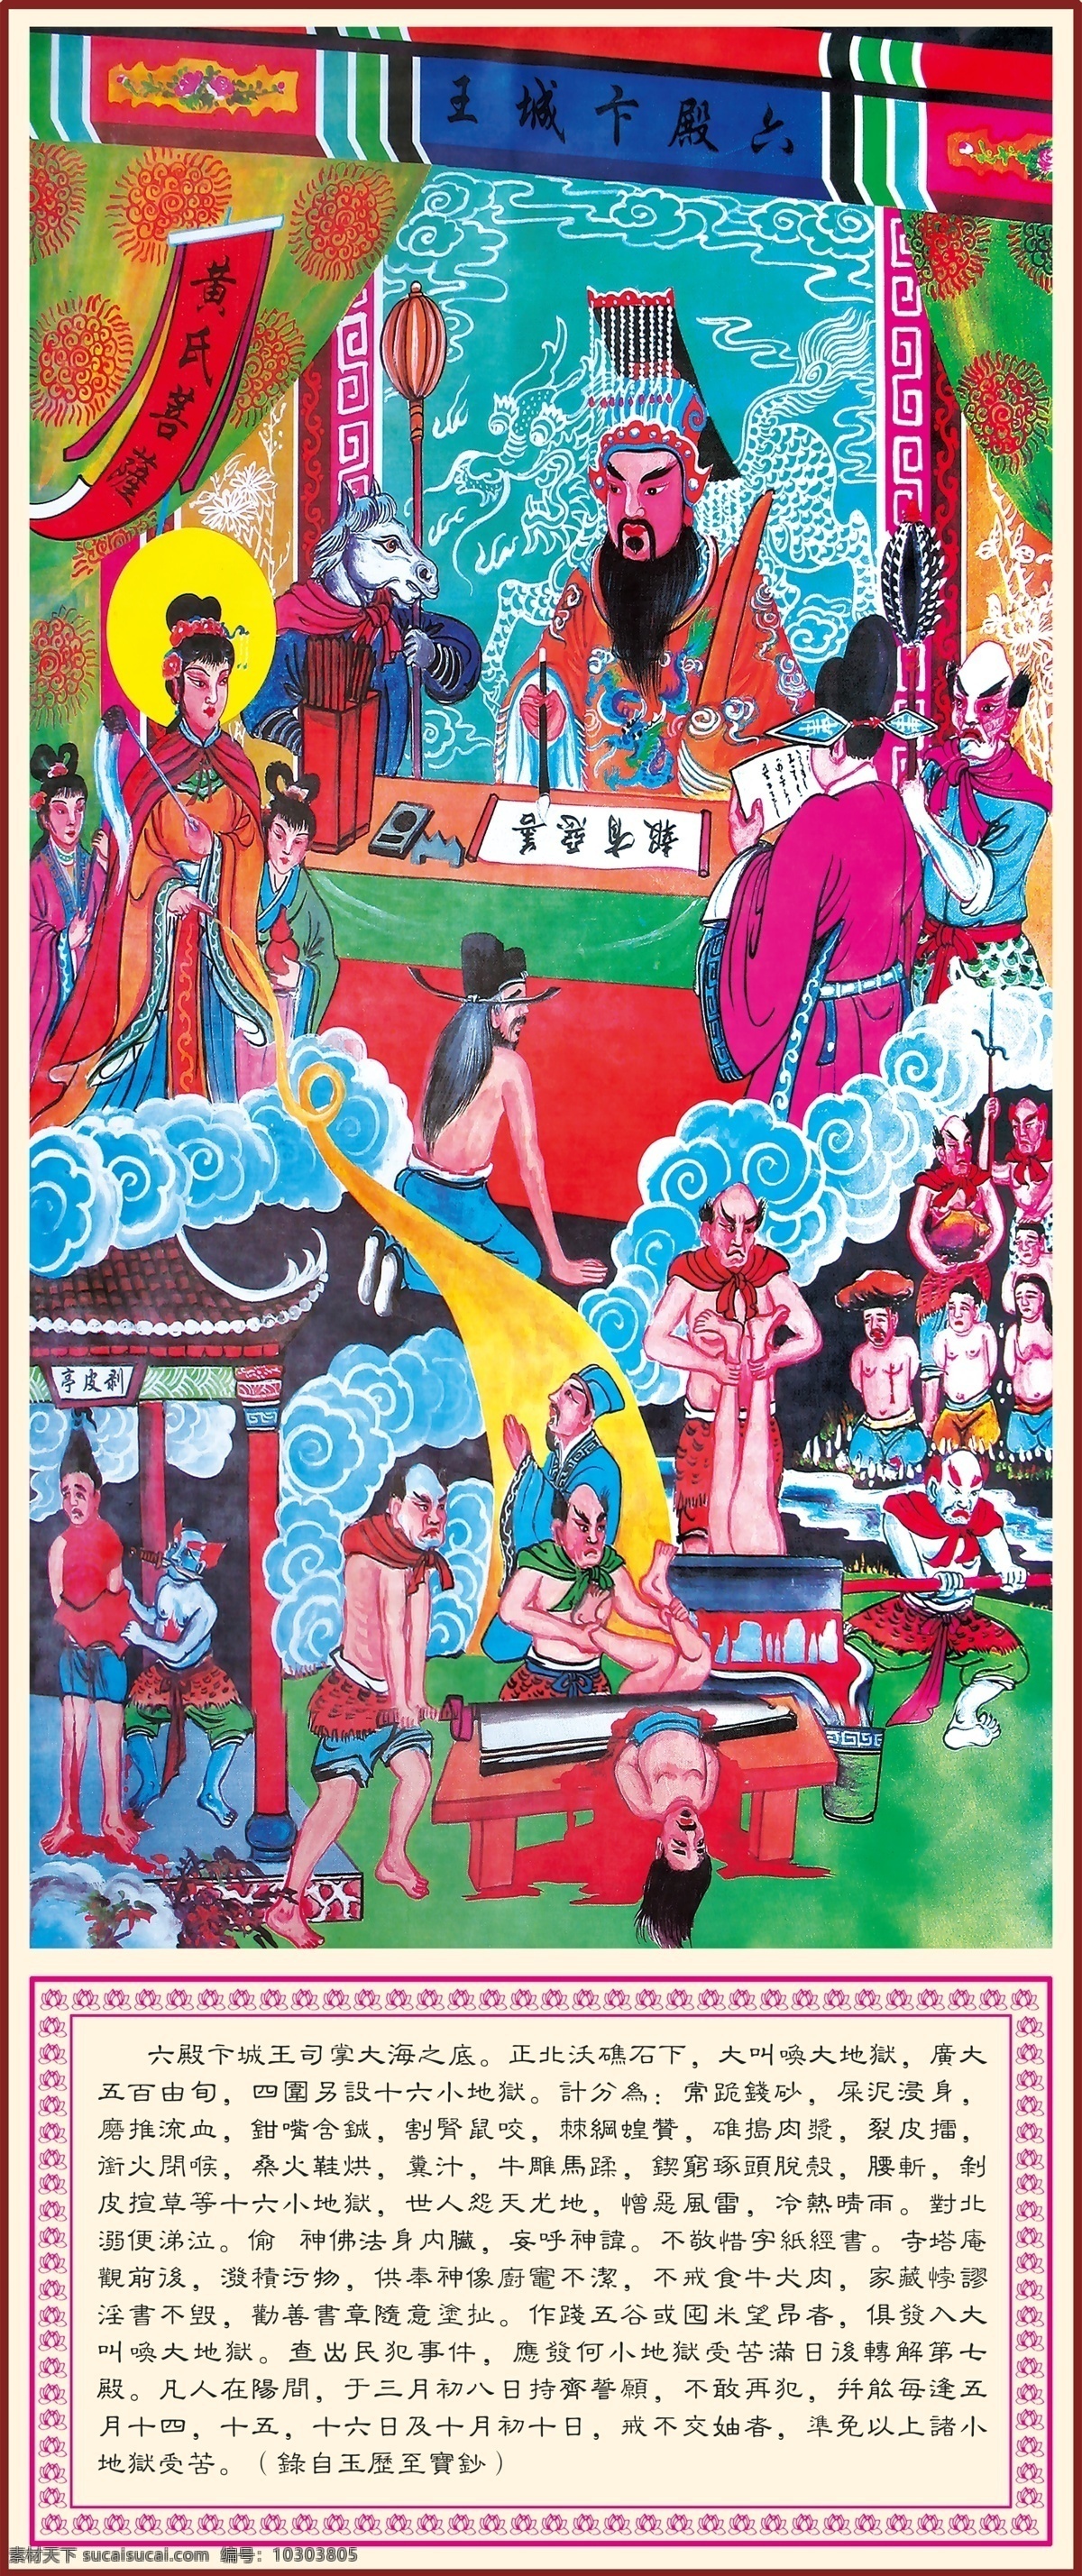 十 殿 阎王 卞 城 王 广告设计模板 其他模版 源文件 宗教信仰 卞城王简介 文化艺术